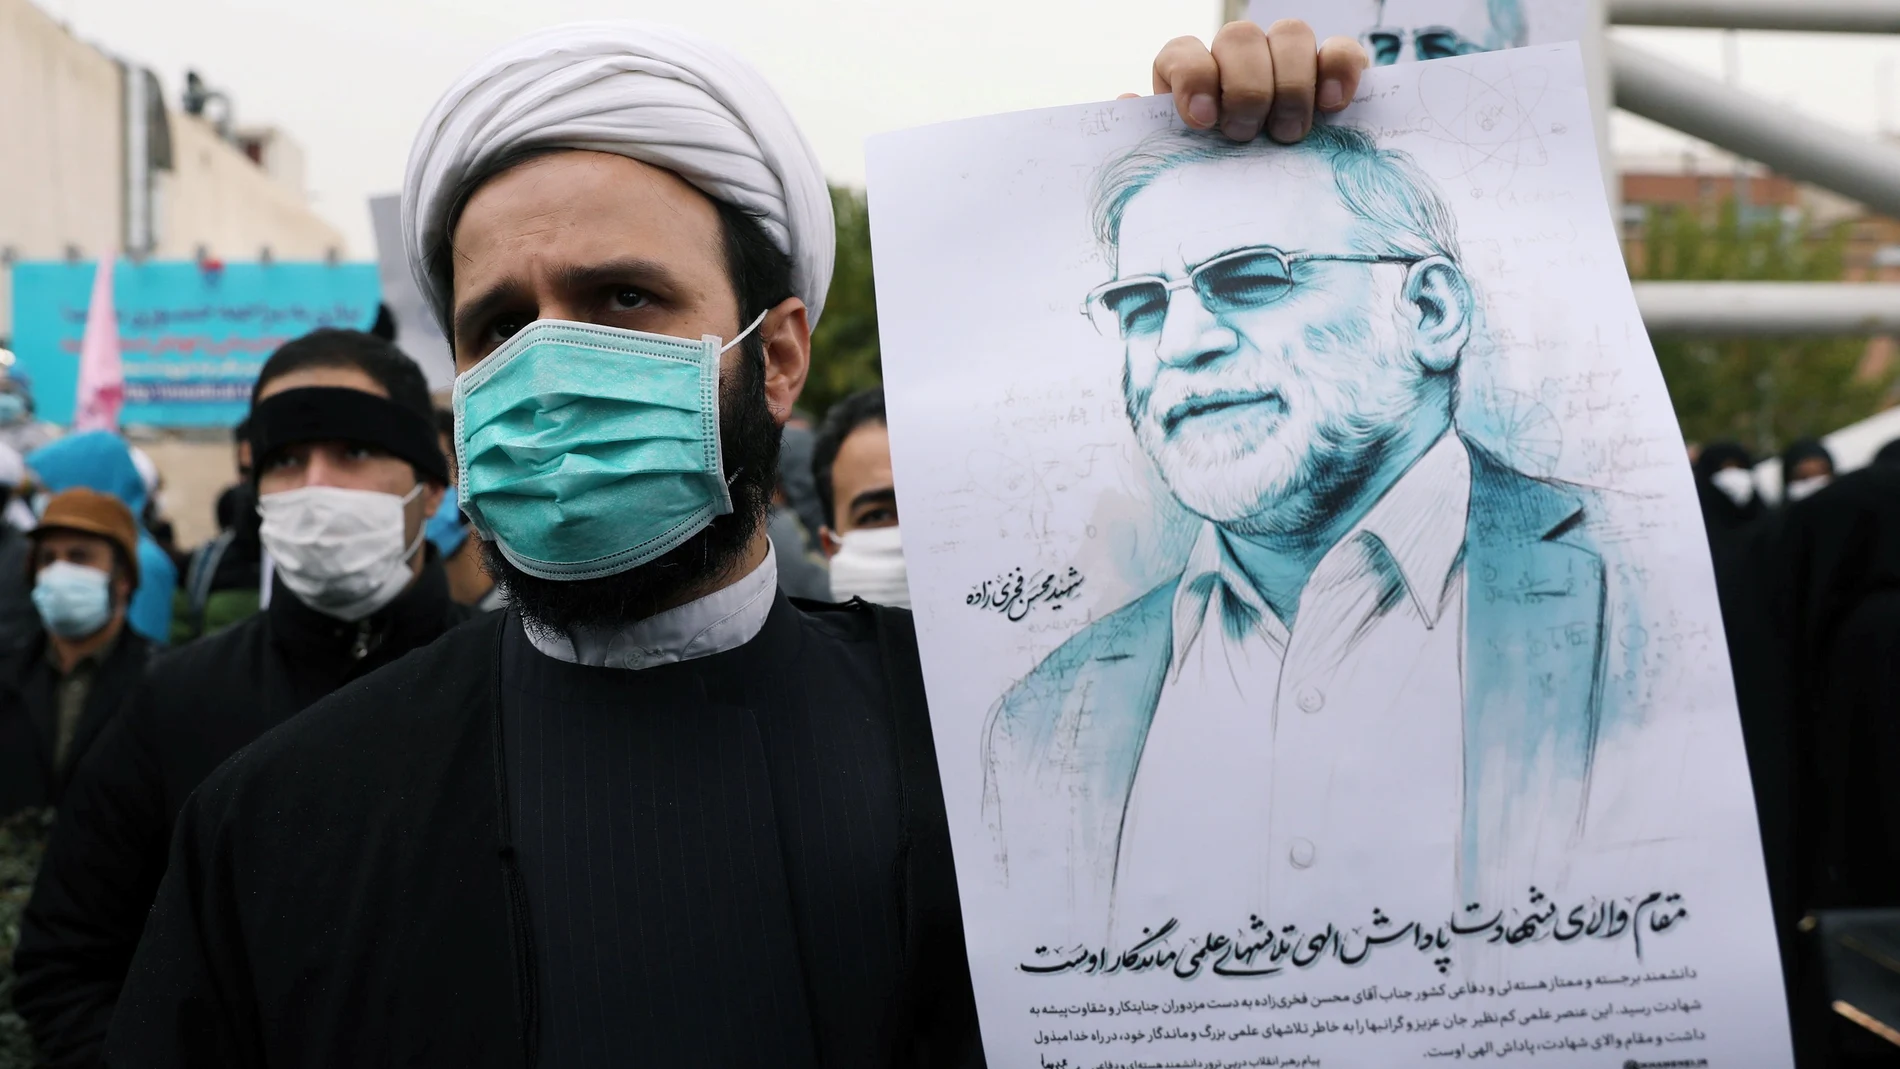 Un iraní sujeta una imagen de Mohsen Fakhrizadeh durante una protesta por su muerte hoy en Teherán.